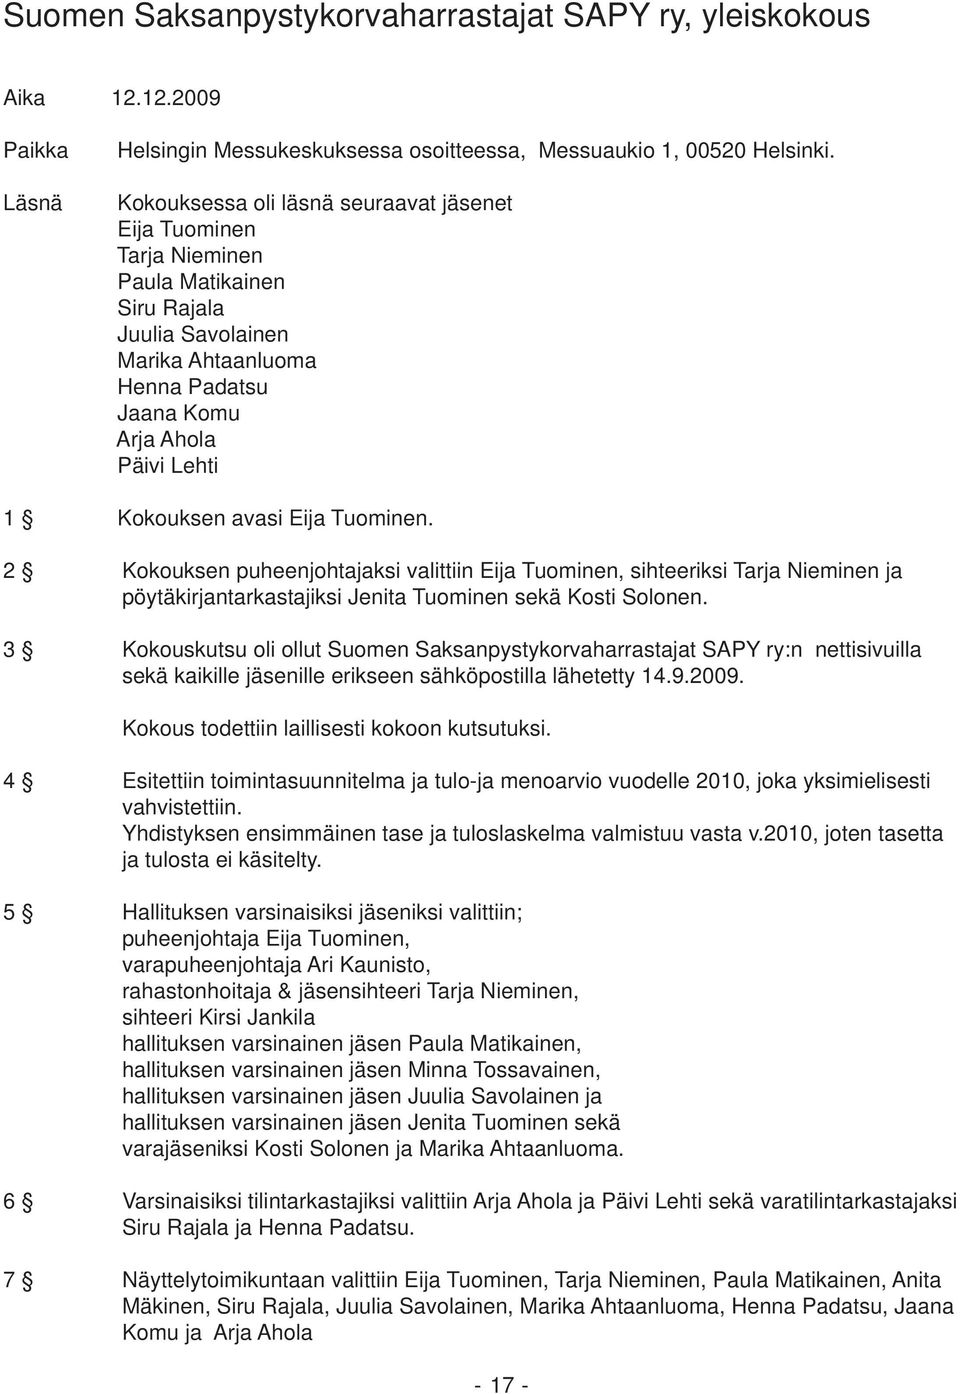 avasi Eija Tuominen. 2 Kokouksen puheenjohtajaksi valittiin Eija Tuominen, sihteeriksi Tarja Nieminen ja pöytäkirjantarkastajiksi Jenita Tuominen sekä Kosti Solonen.